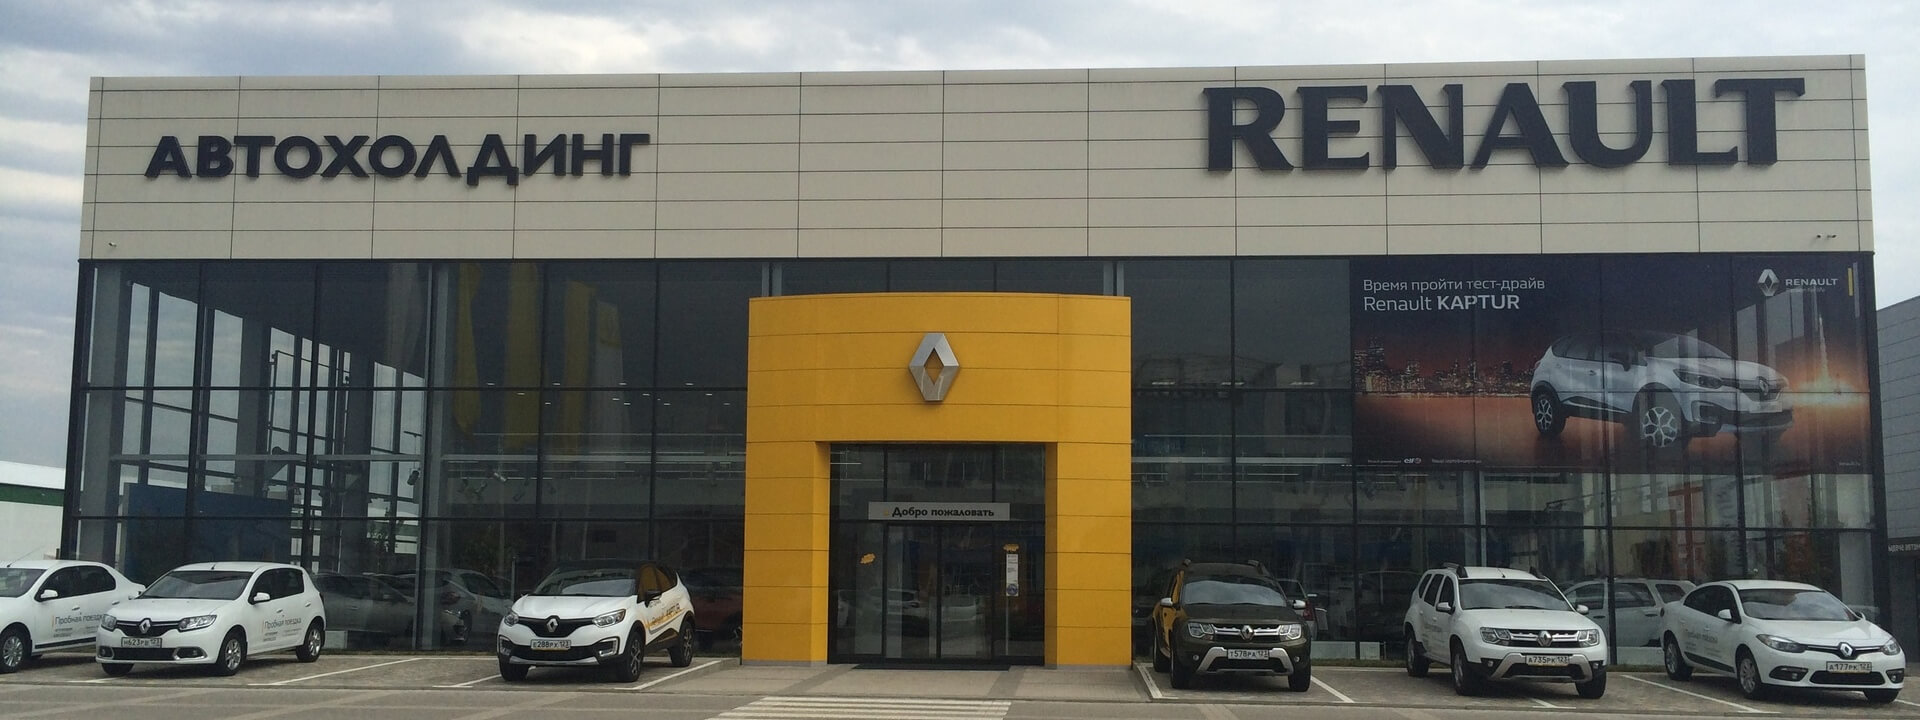 Ремонт Renault Megane — сервис, ремонт и техническое обслуживание (ТО) автомобилей Рено Меган в автосервисе в Краснодаре